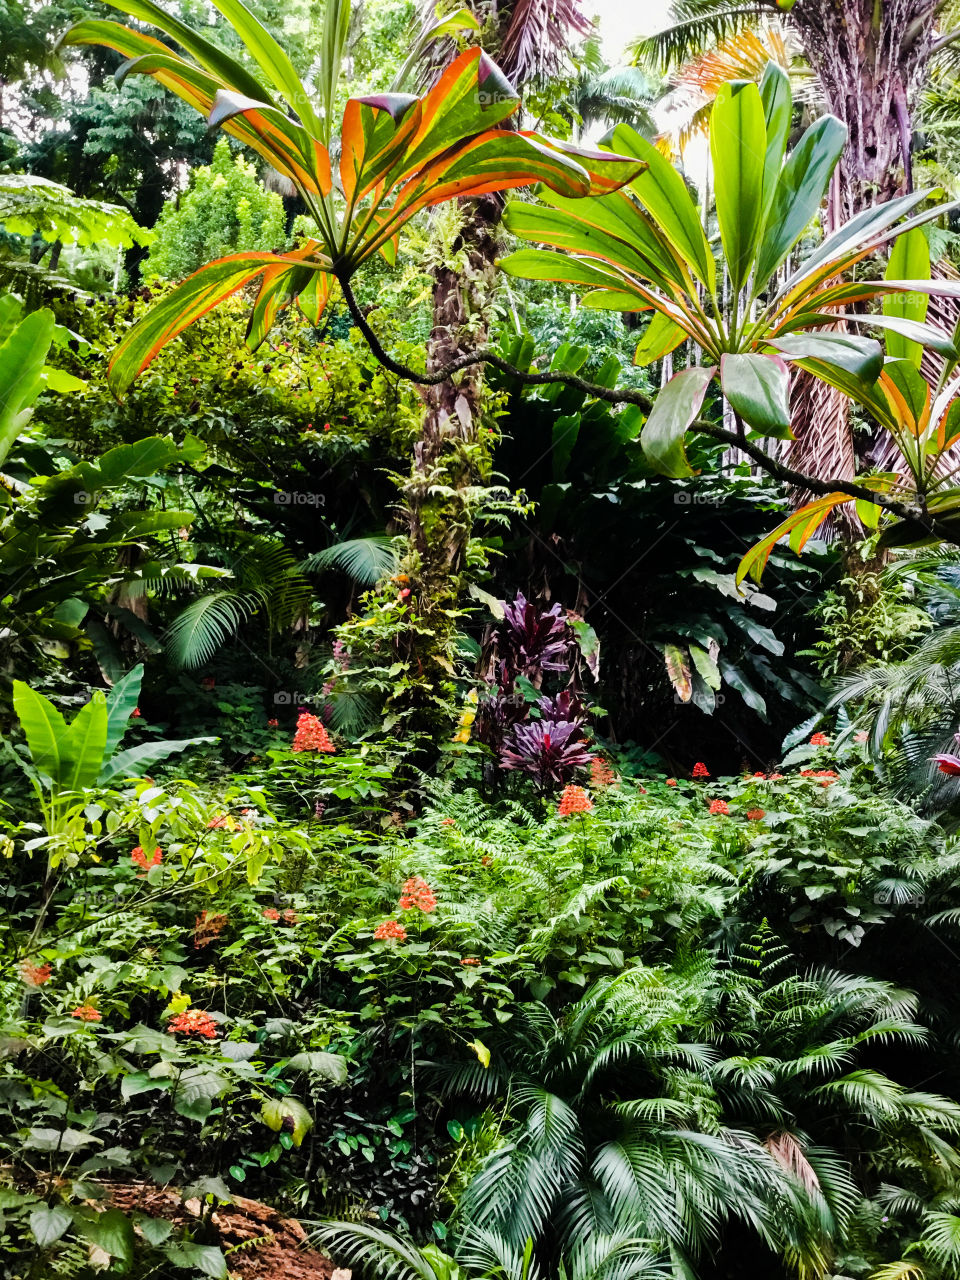 Jungle at Hawaii Tropical Botanical Garden